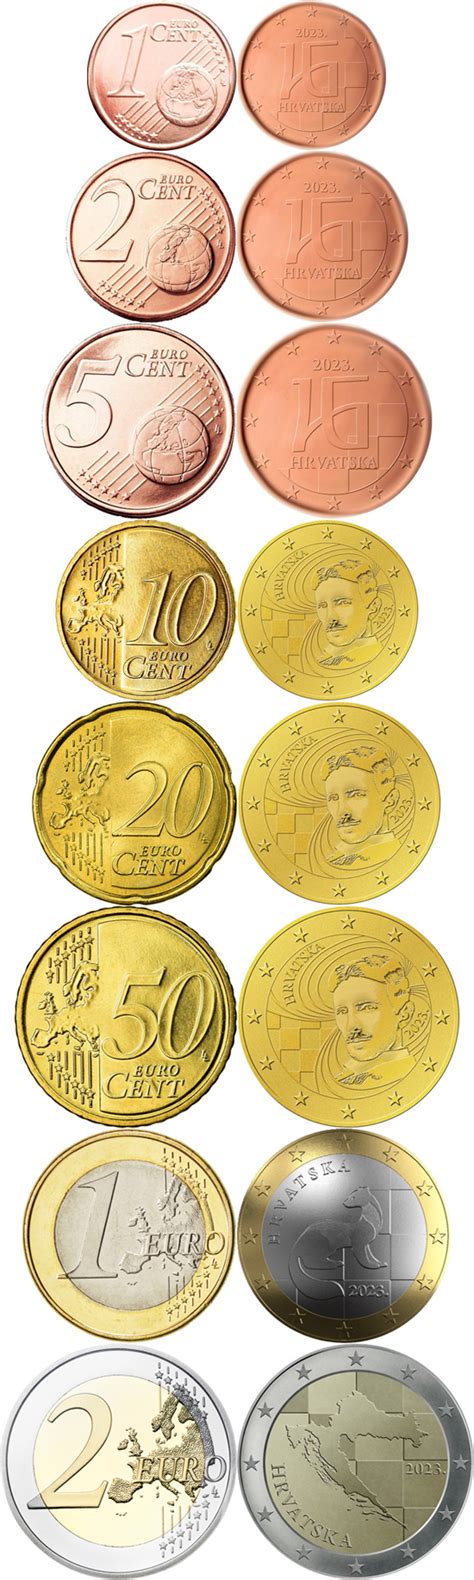 World Coin News Croatia 2023 Euro Coin Desings Are Ready